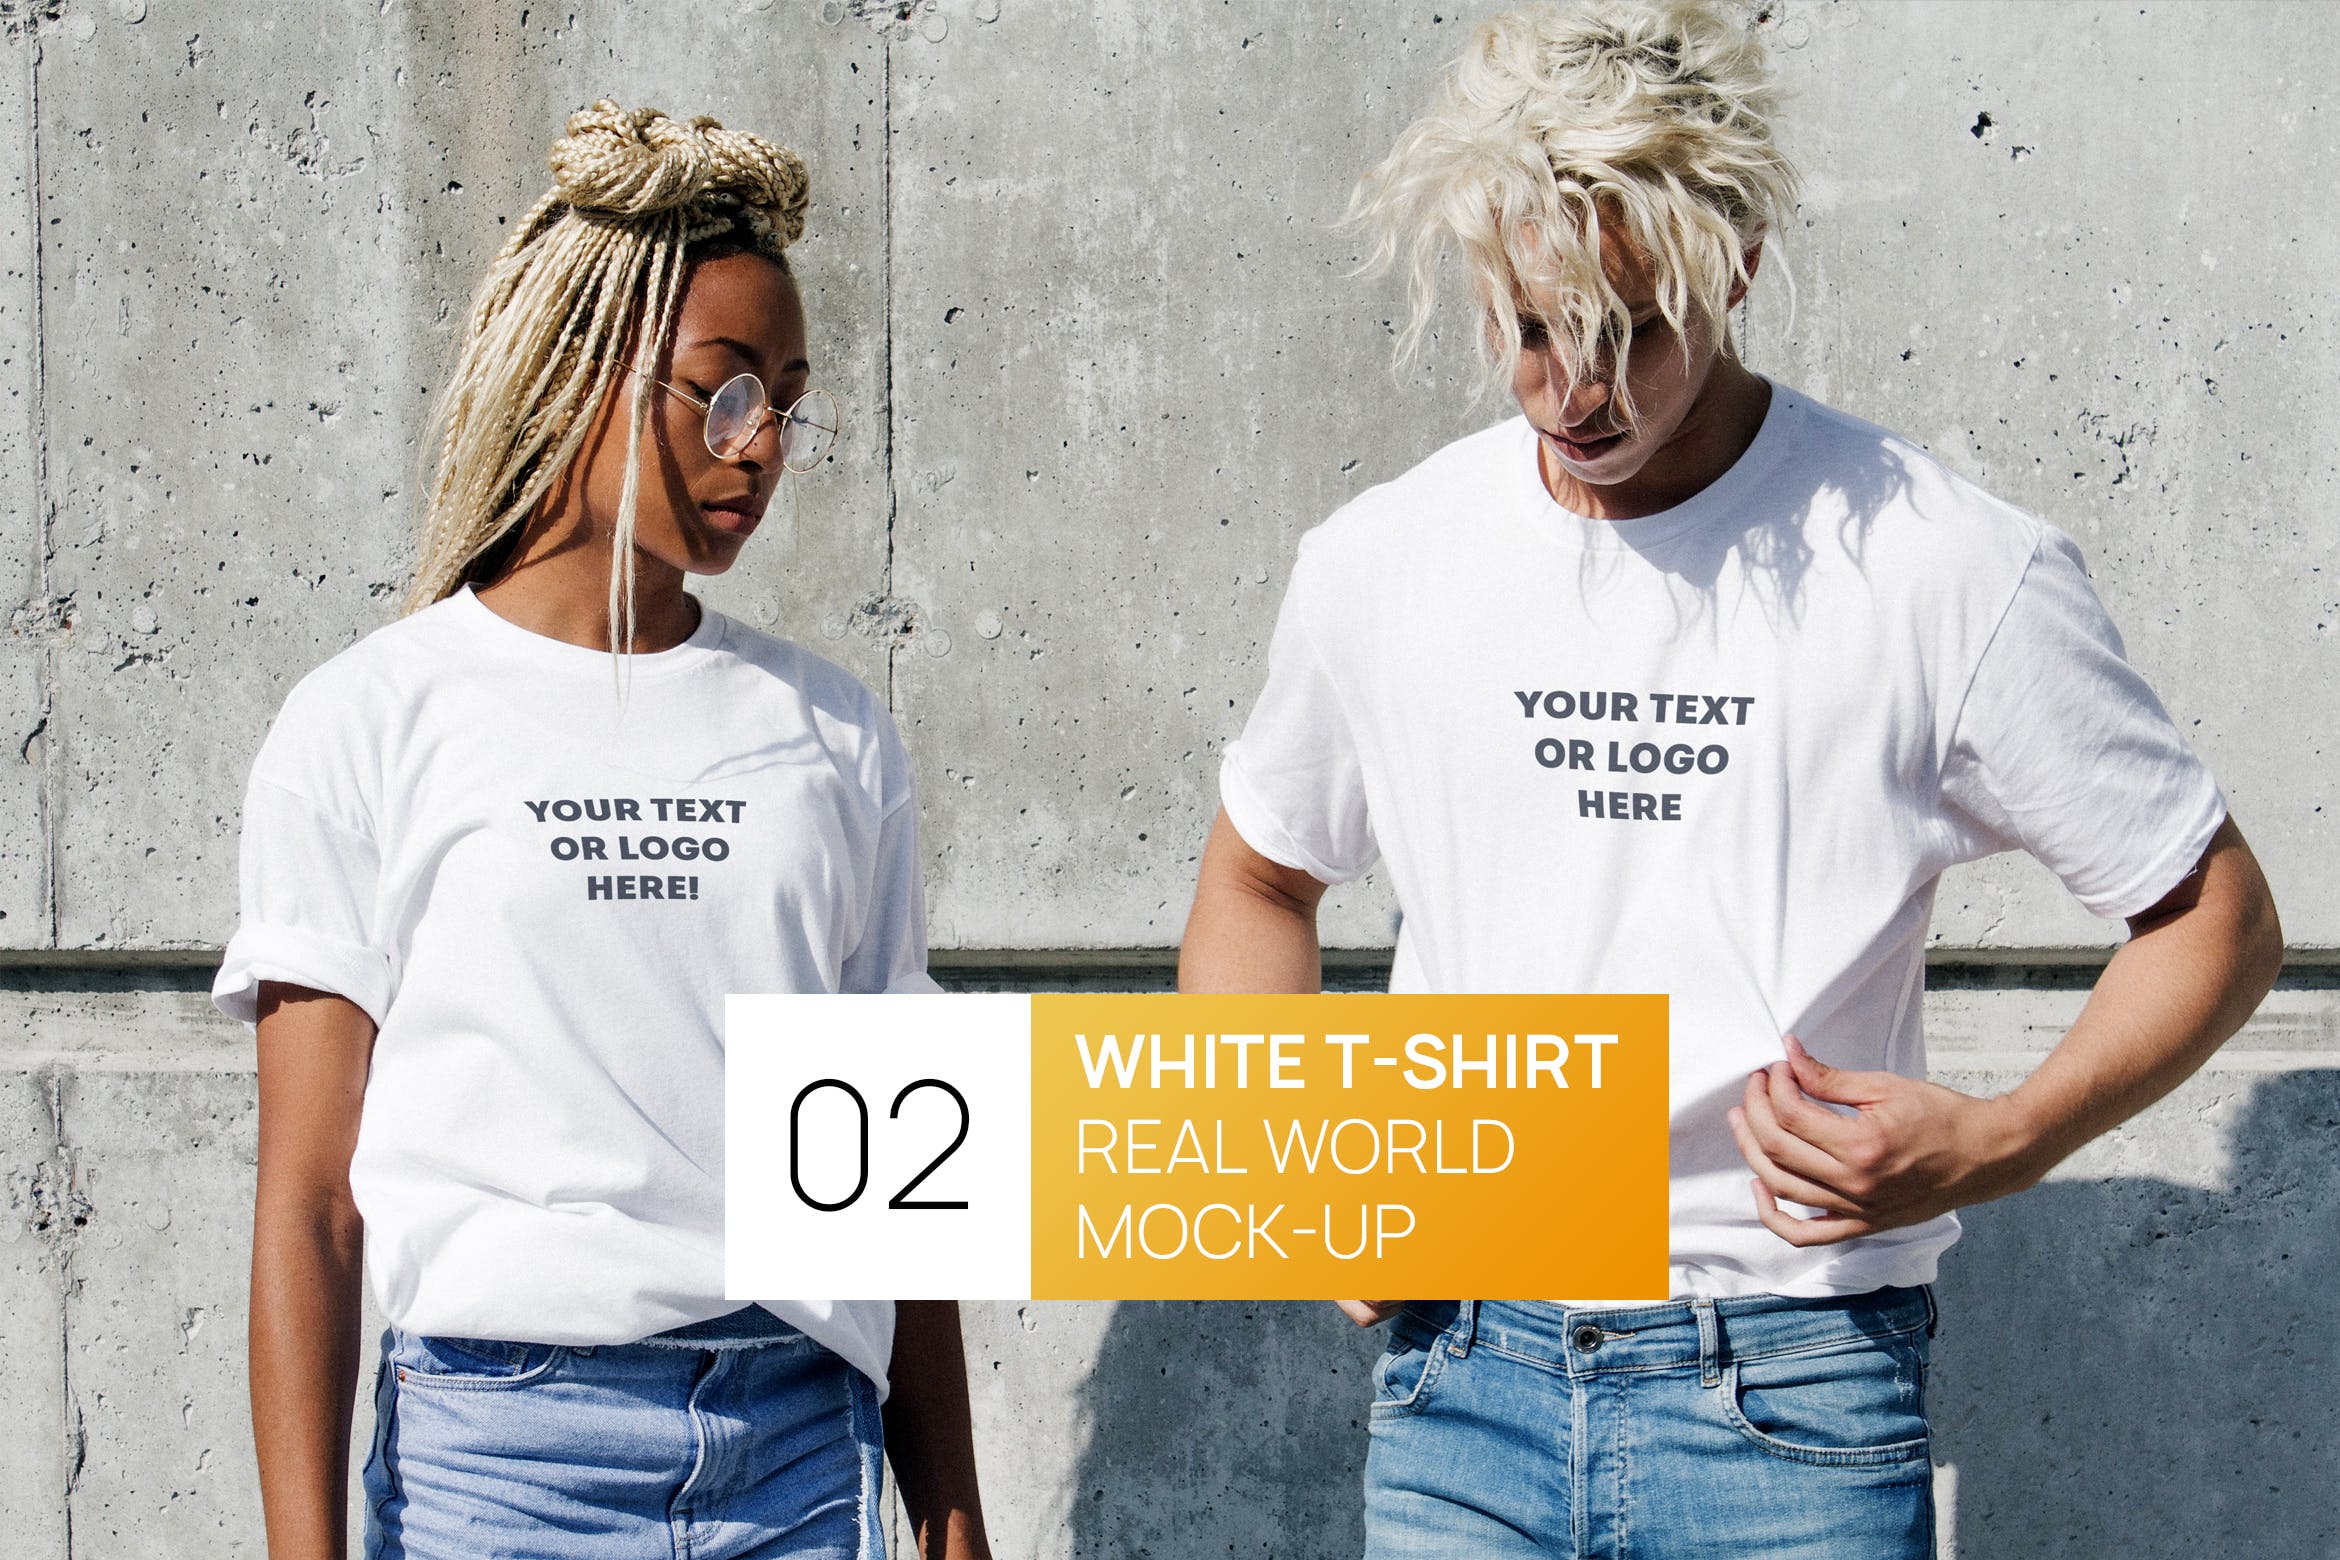 情侣T恤服装设计效果图样机大洋岛精选 Two Persons White T-Shirt Real World Photo Mock-up插图